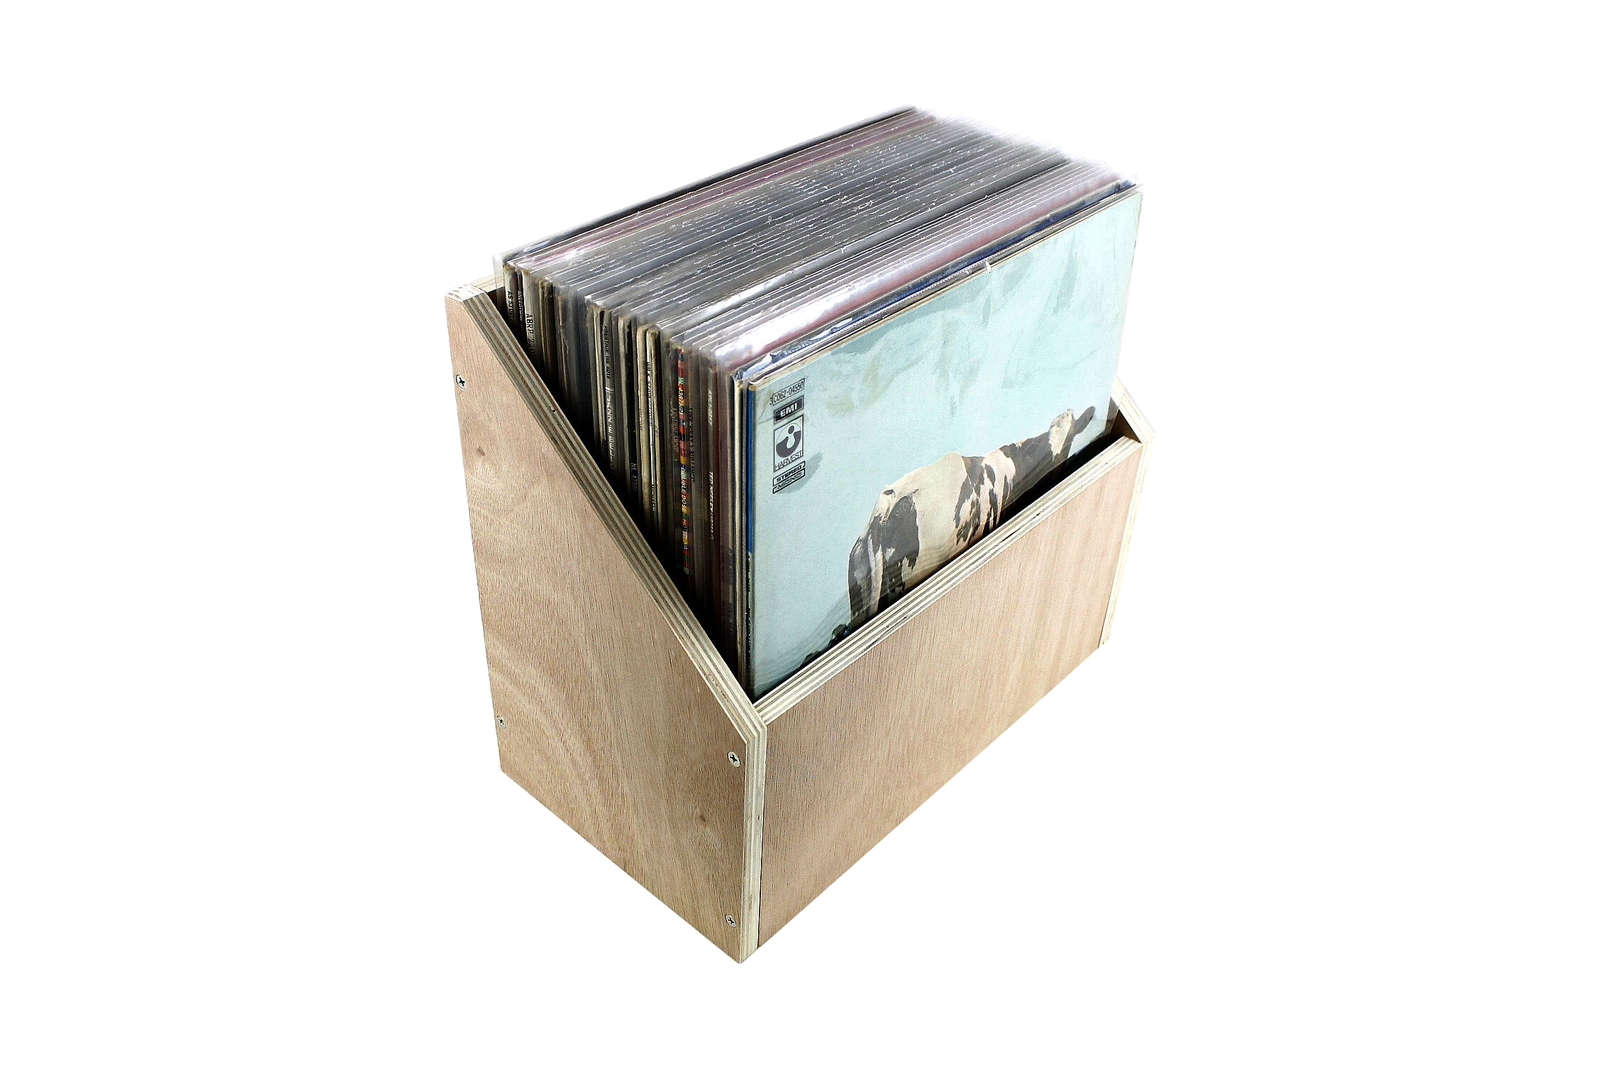 Mobile espositore in legno multistrato inclinato per 35-45 dischi LP 33 giri